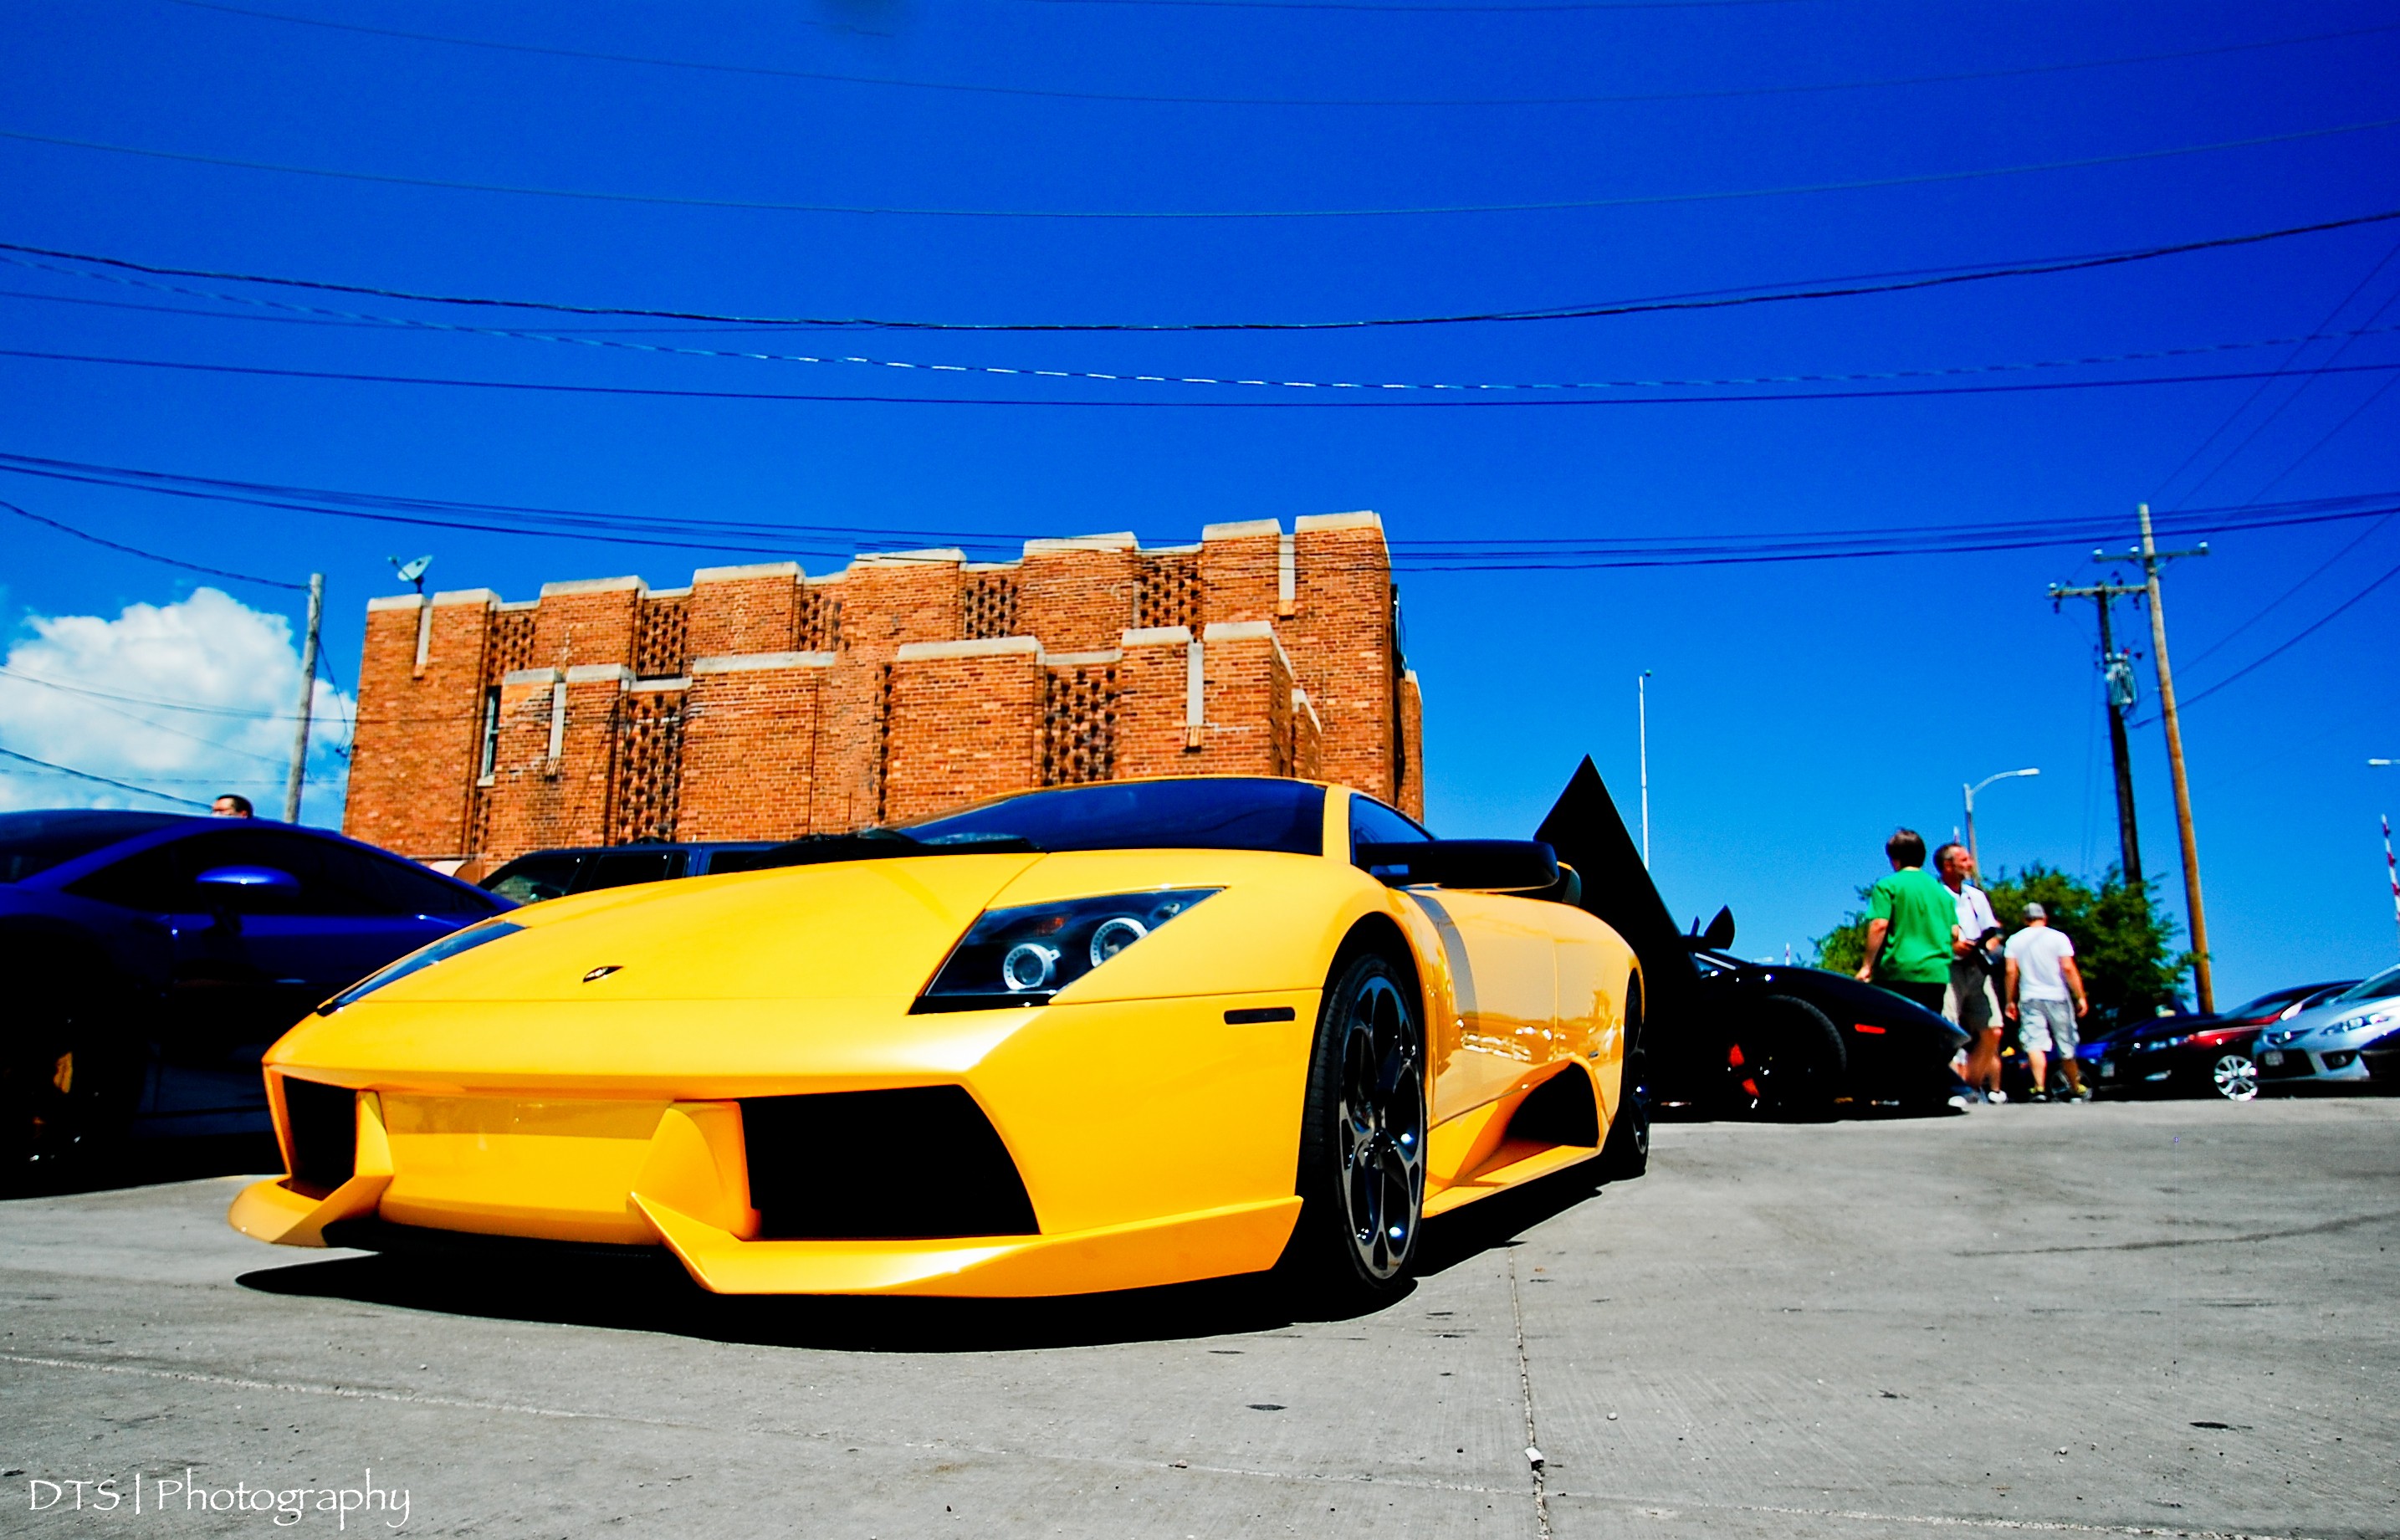 General 2869x1841 car vehicle Lamborghini yellow cars